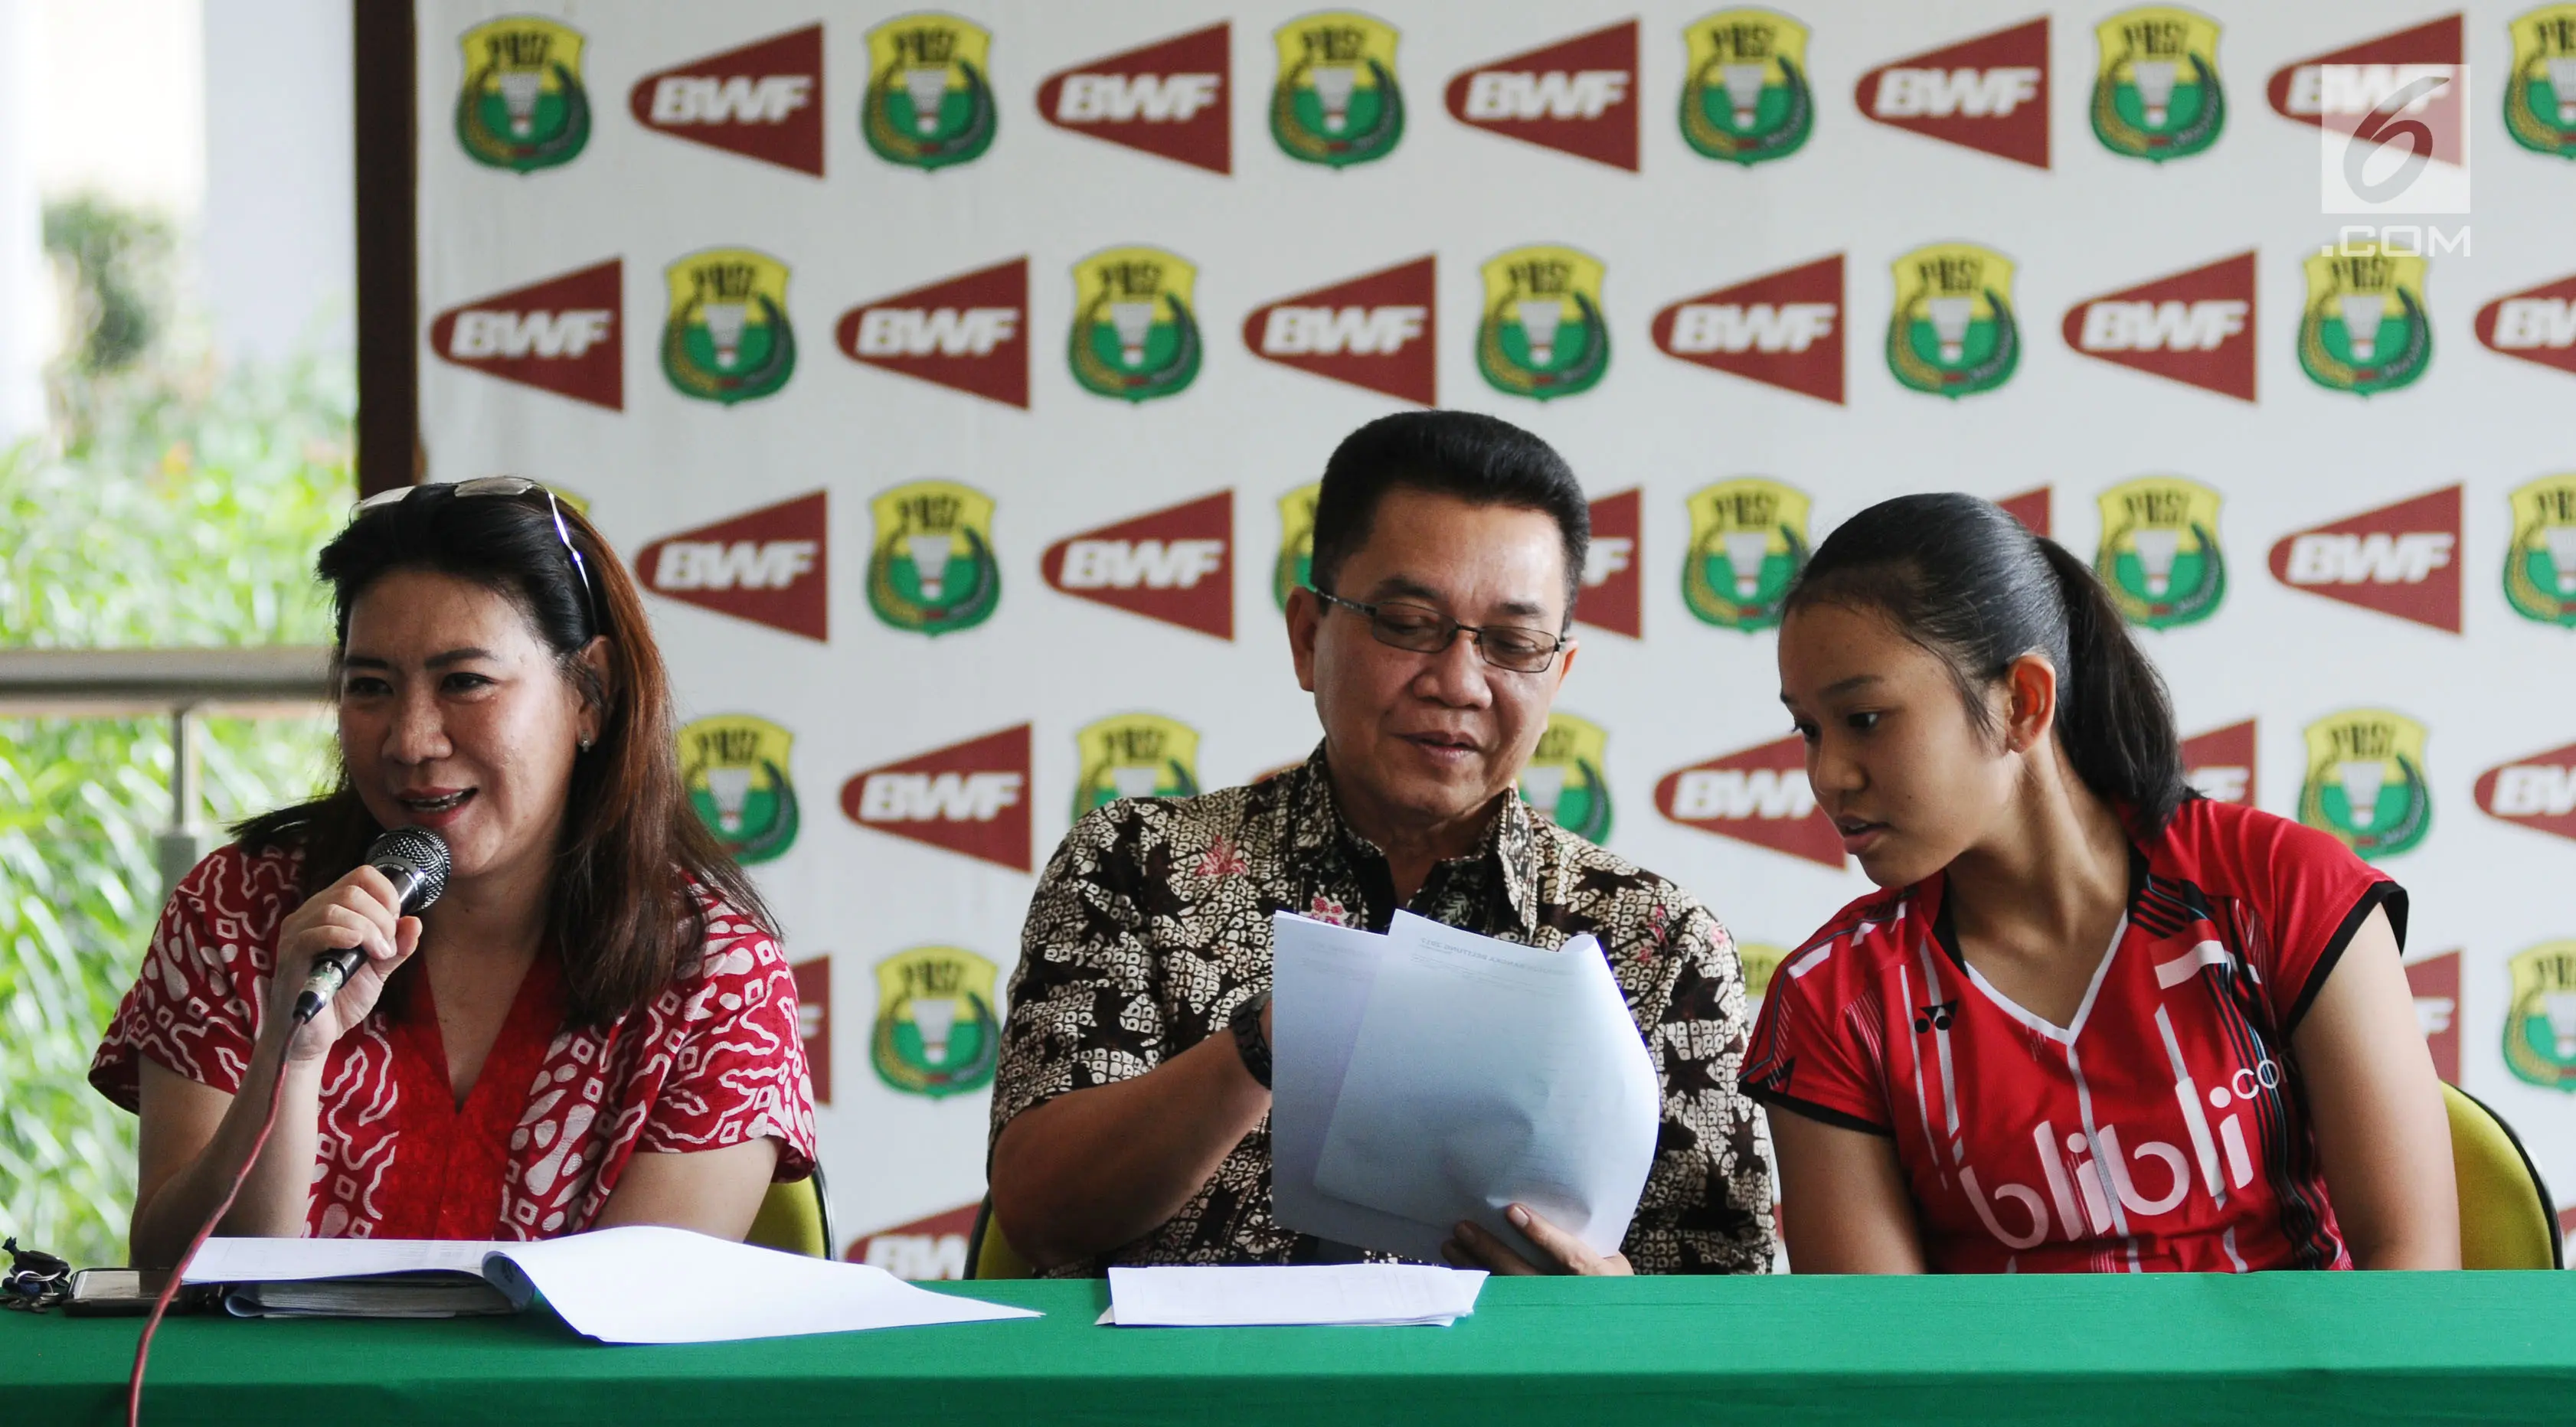 Kabid Binpres PP PBSI, Susi Susanti (kiri) memberi keterangan terkait Kejurnas PBSI 2017 Gubernur Kepulauan Bangka Belitung di Jakarta, Jumat (24/11). Kejurnas digelar di Pangkalpinang pada 28 November-2 Desember. (Liputan6.com/Helmi Fithriansyah)